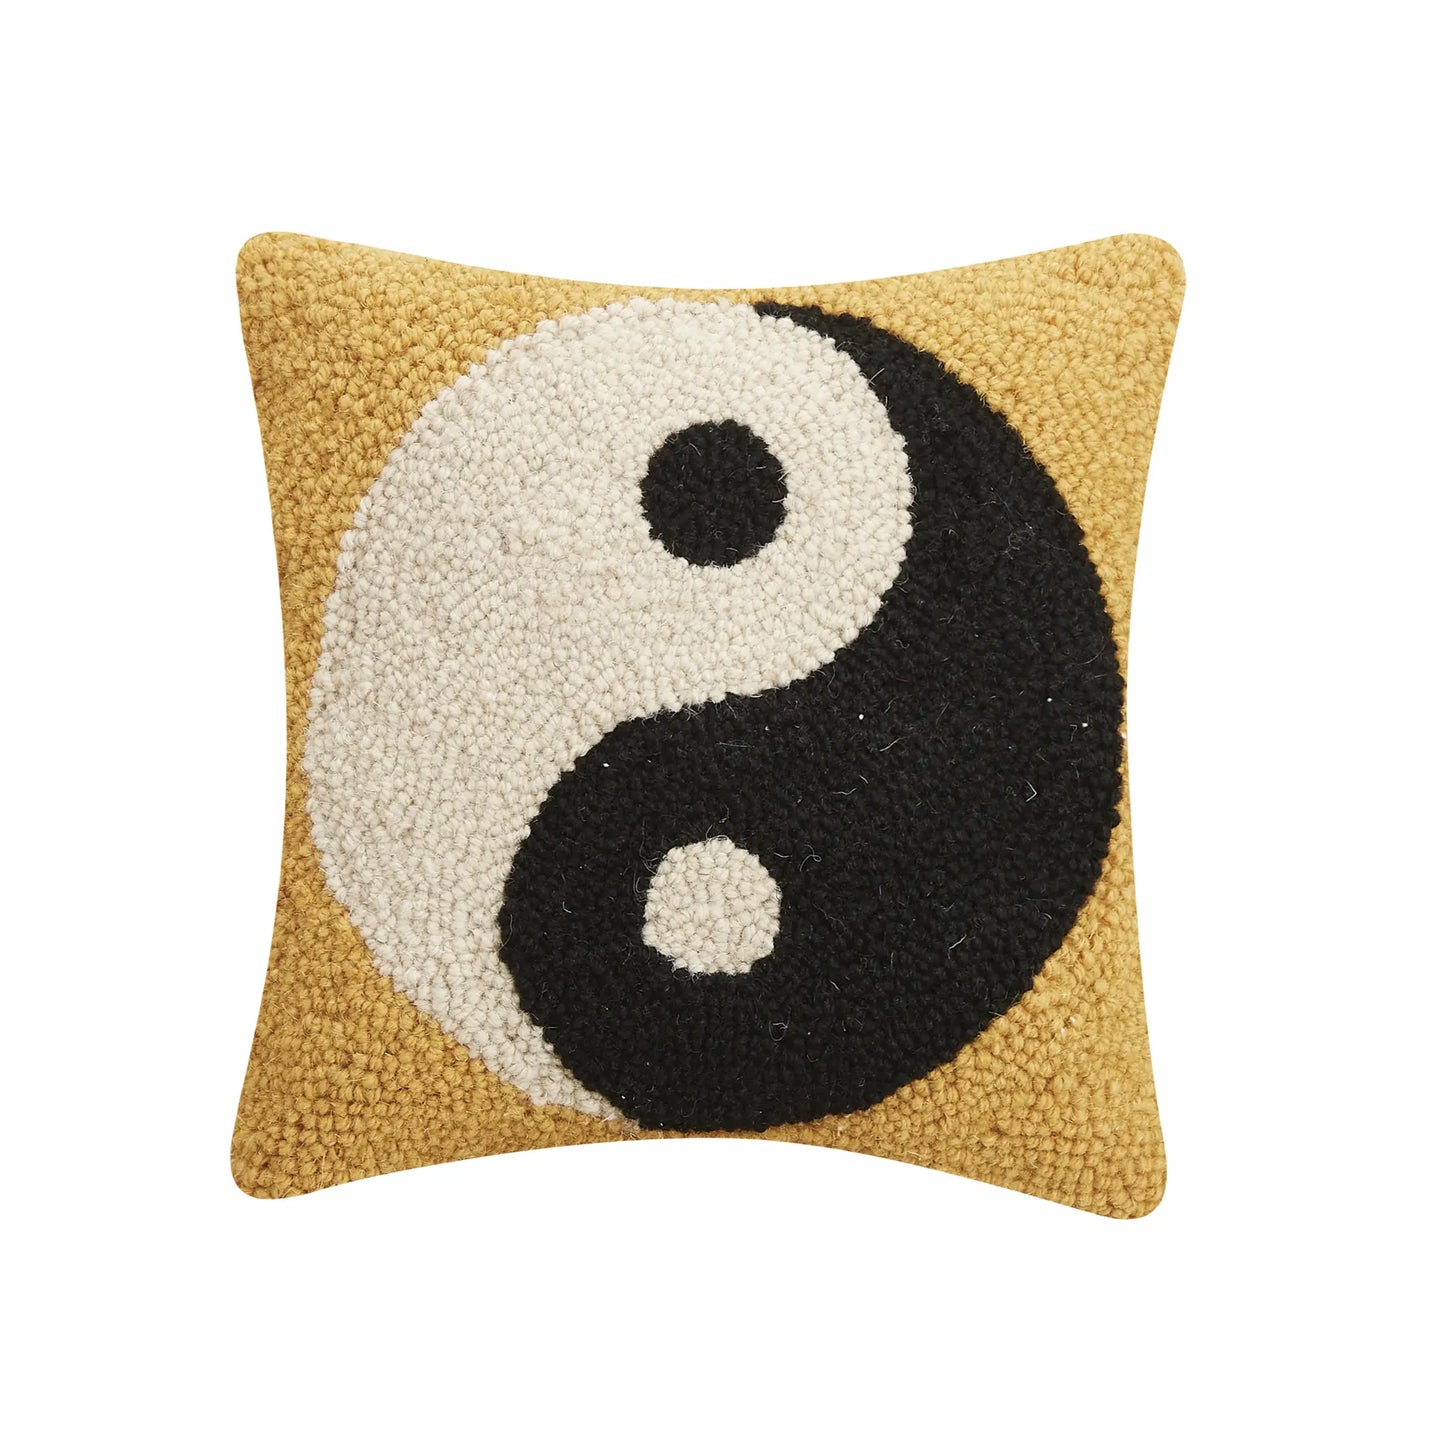 Yin Yang Small Cushion